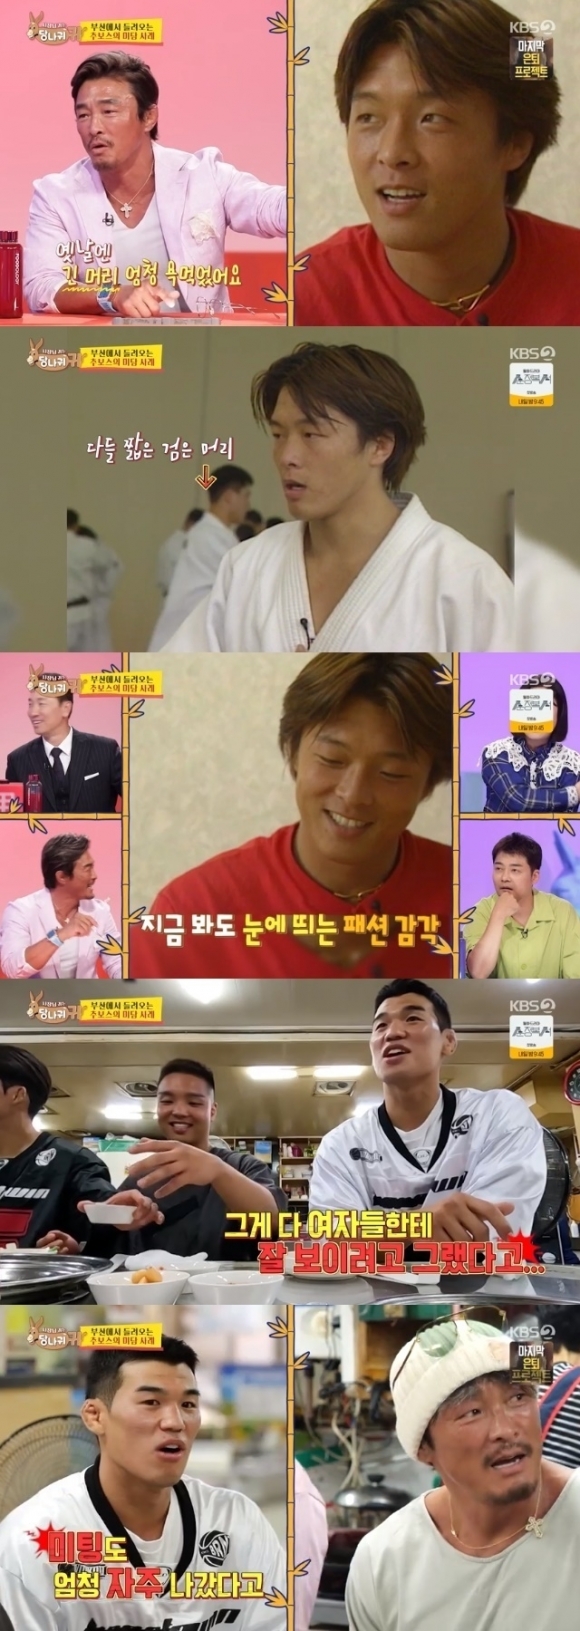 KBS 2TV ‘사장님 귀는 당나귀 귀’